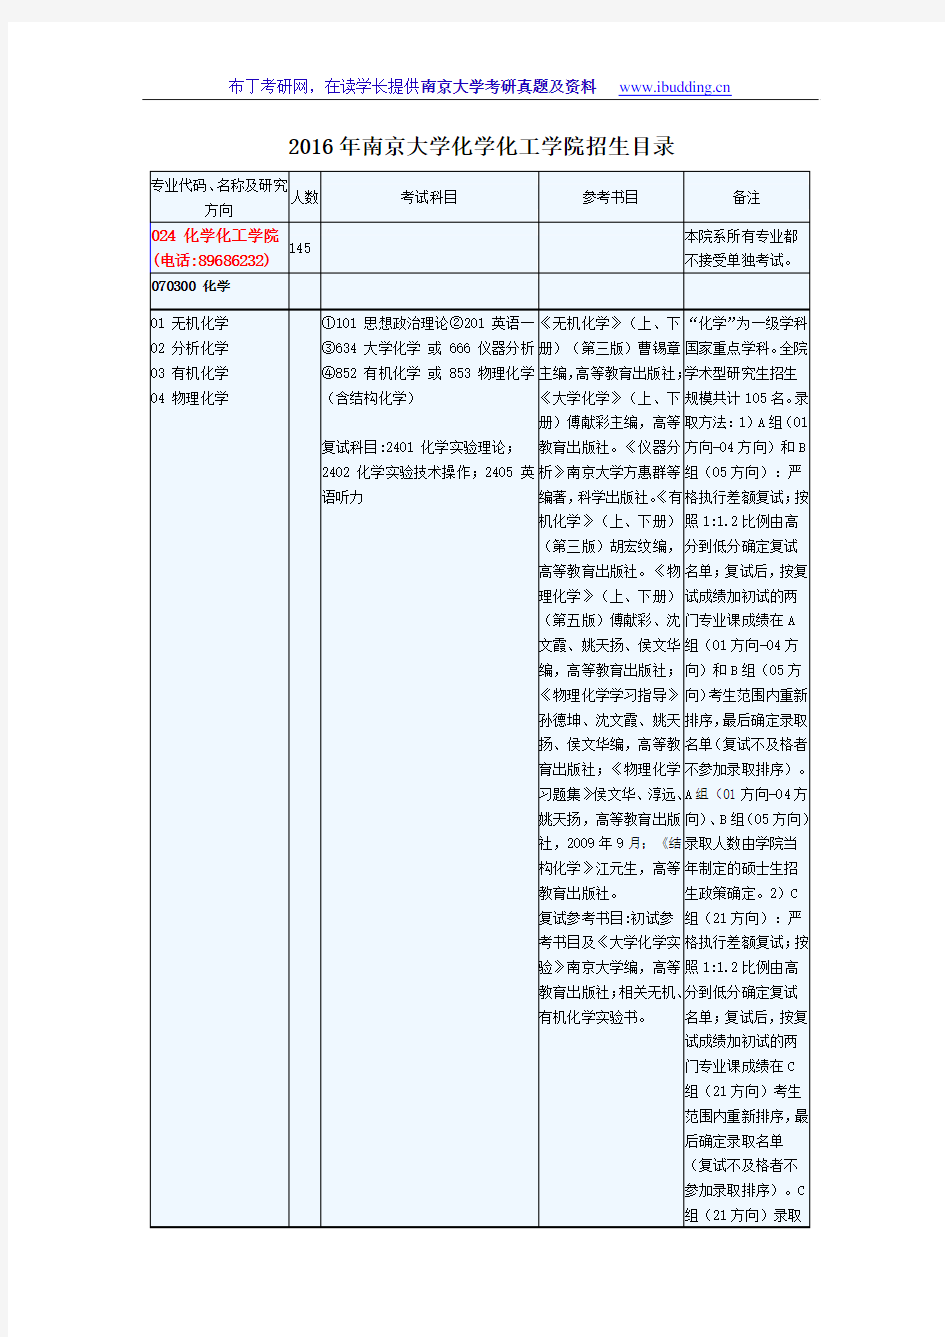 2016年南京大学南大化学化工学院 考研招生目录 考试科目及范围 录取人数汇总